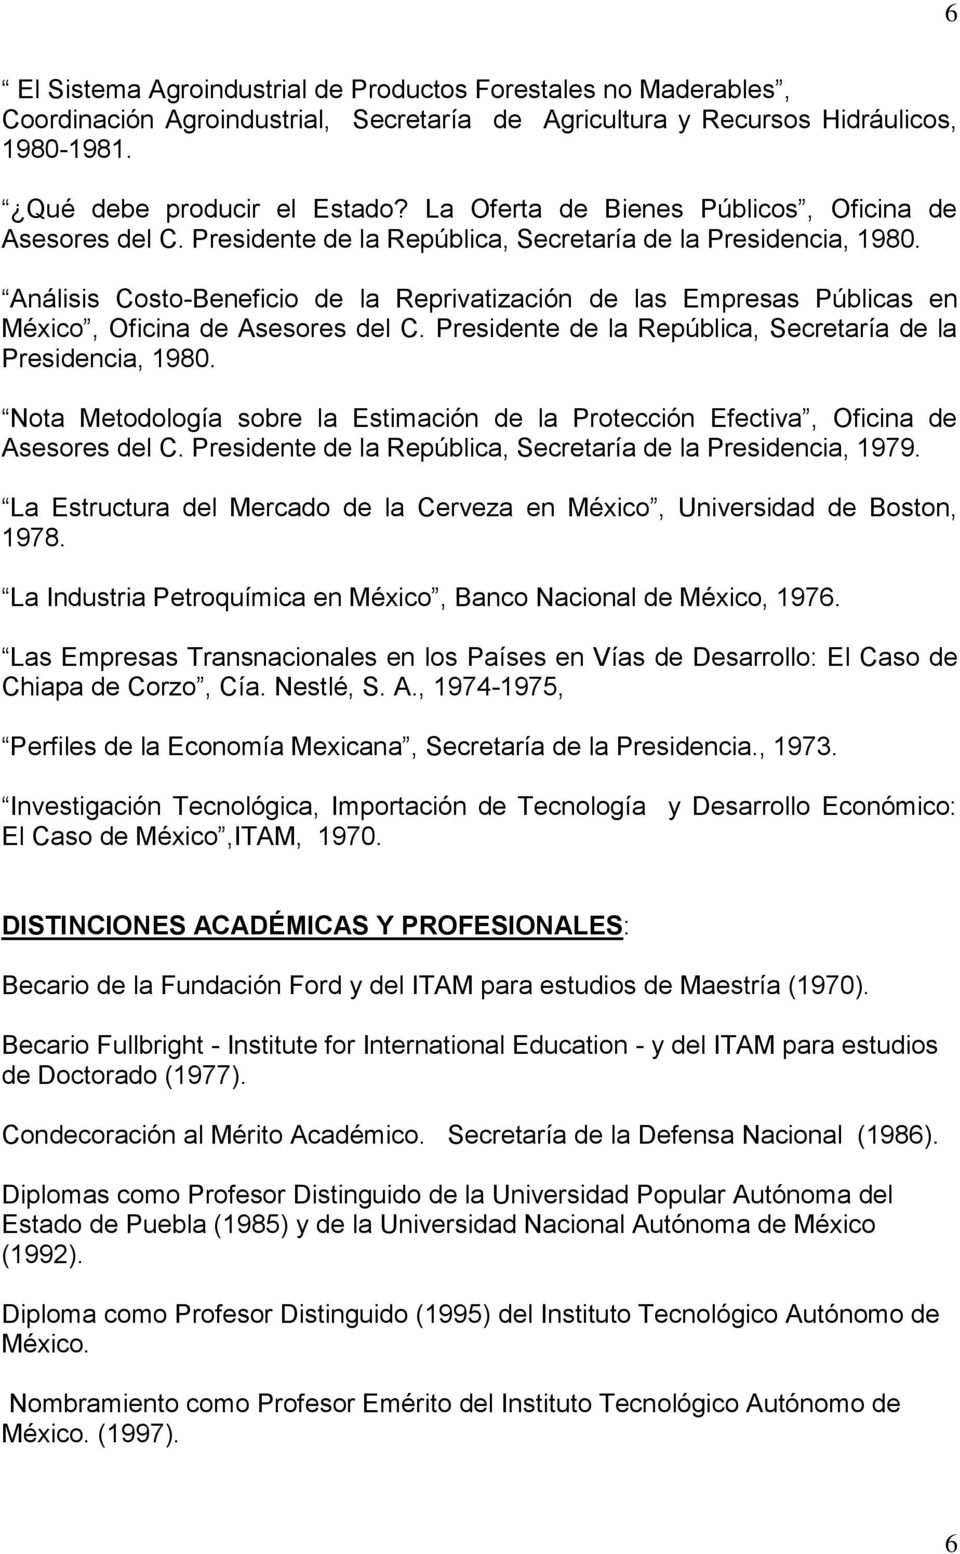 Análisis Costo-Beneficio de la Reprivatización de las Empresas Públicas en México, Oficina de Asesores del C. Presidente de la República, Secretaría de la Presidencia, 1980.